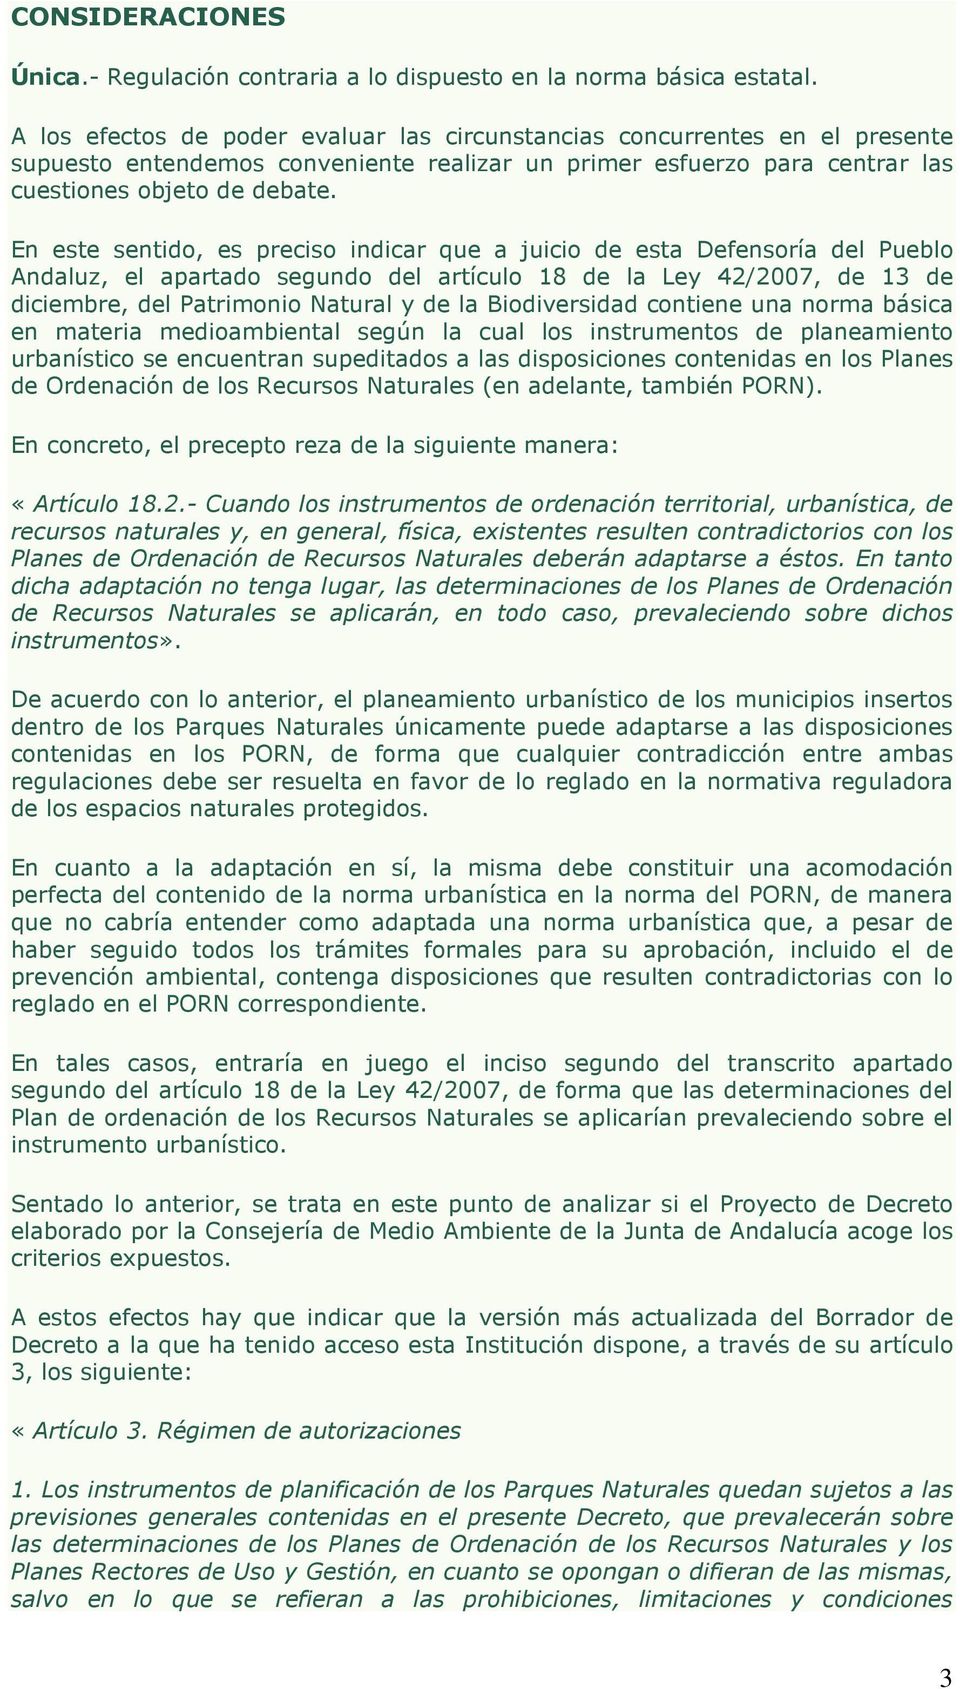 En este sentido, es preciso indicar que a juicio de esta Defensoría del Pueblo Andaluz, el apartado segundo del artículo 18 de la Ley 42/2007, de 13 de diciembre, del Patrimonio Natural y de la